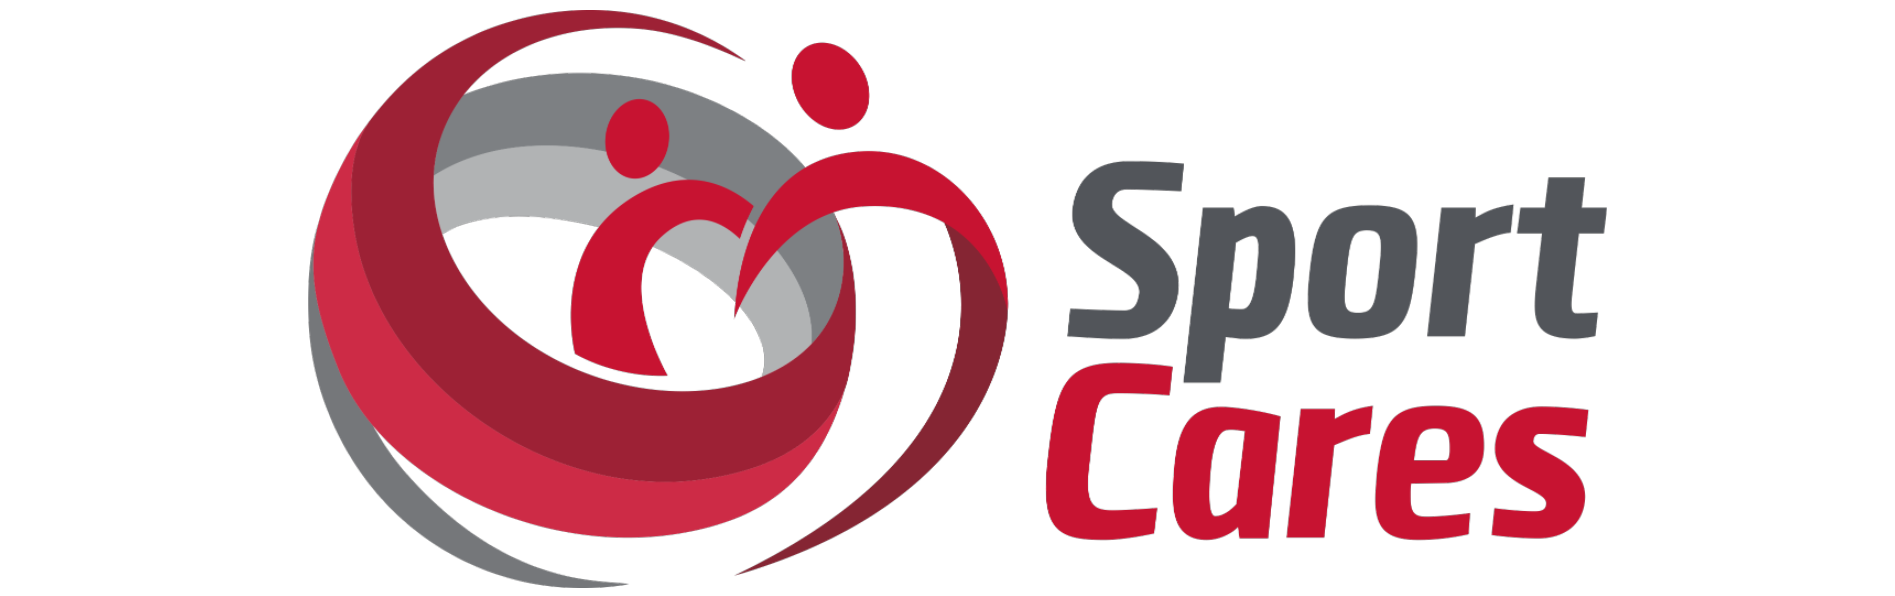 sportcares-logo